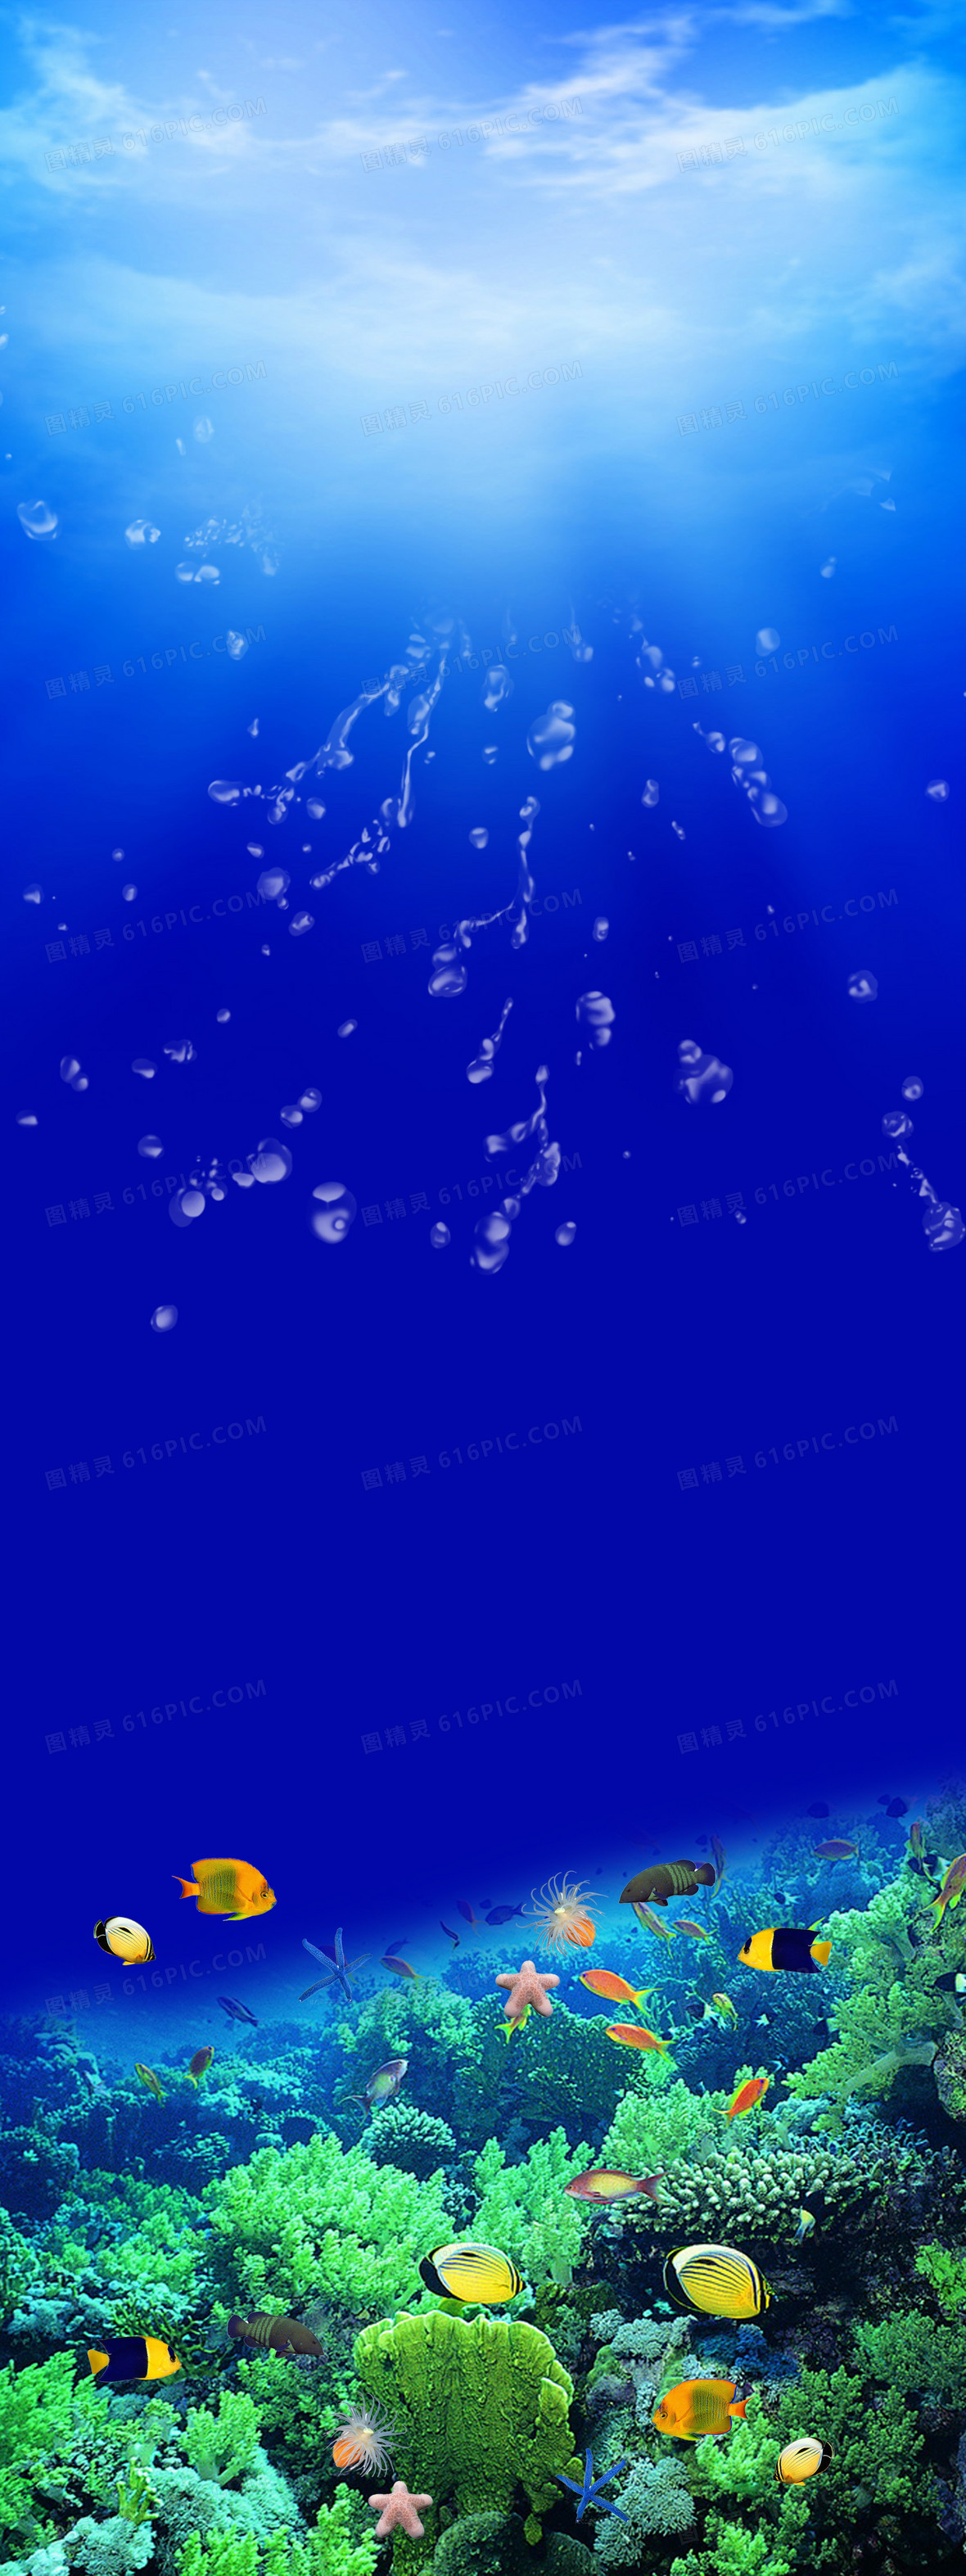 关键词:海底世界鱼珊瑚礁石海水阳光蓝色摄影风景图精灵为您提供海底